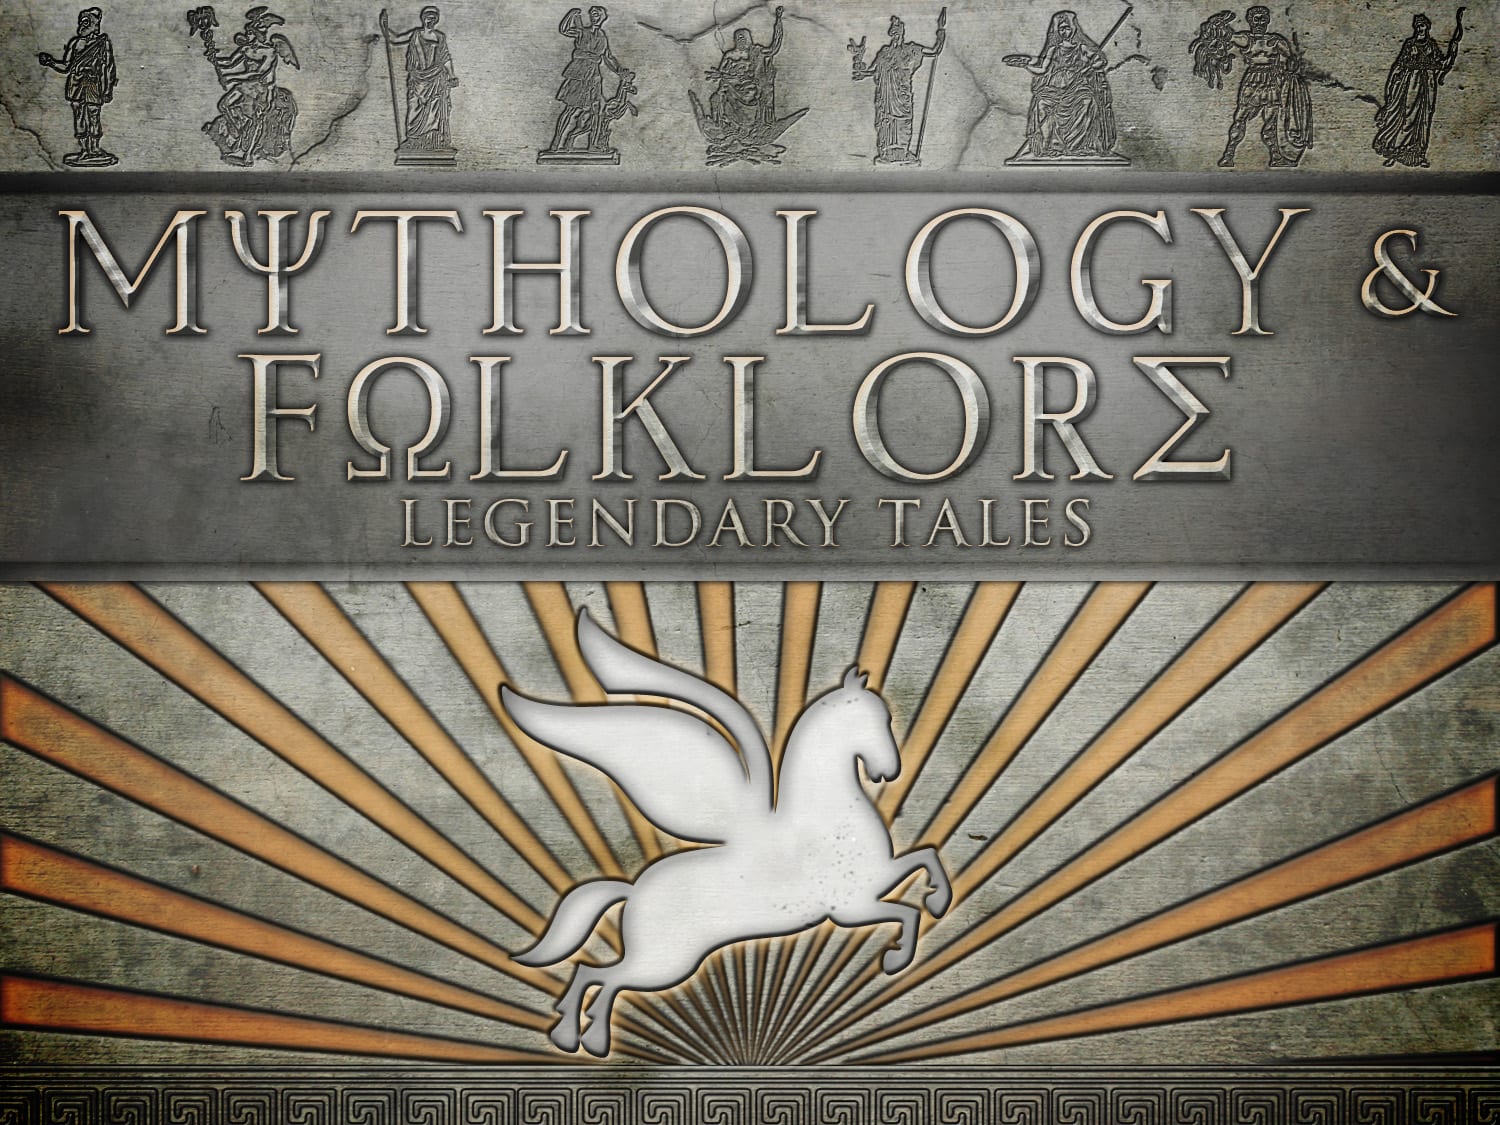 eDL Mythology and Folklore - Legendary Tales